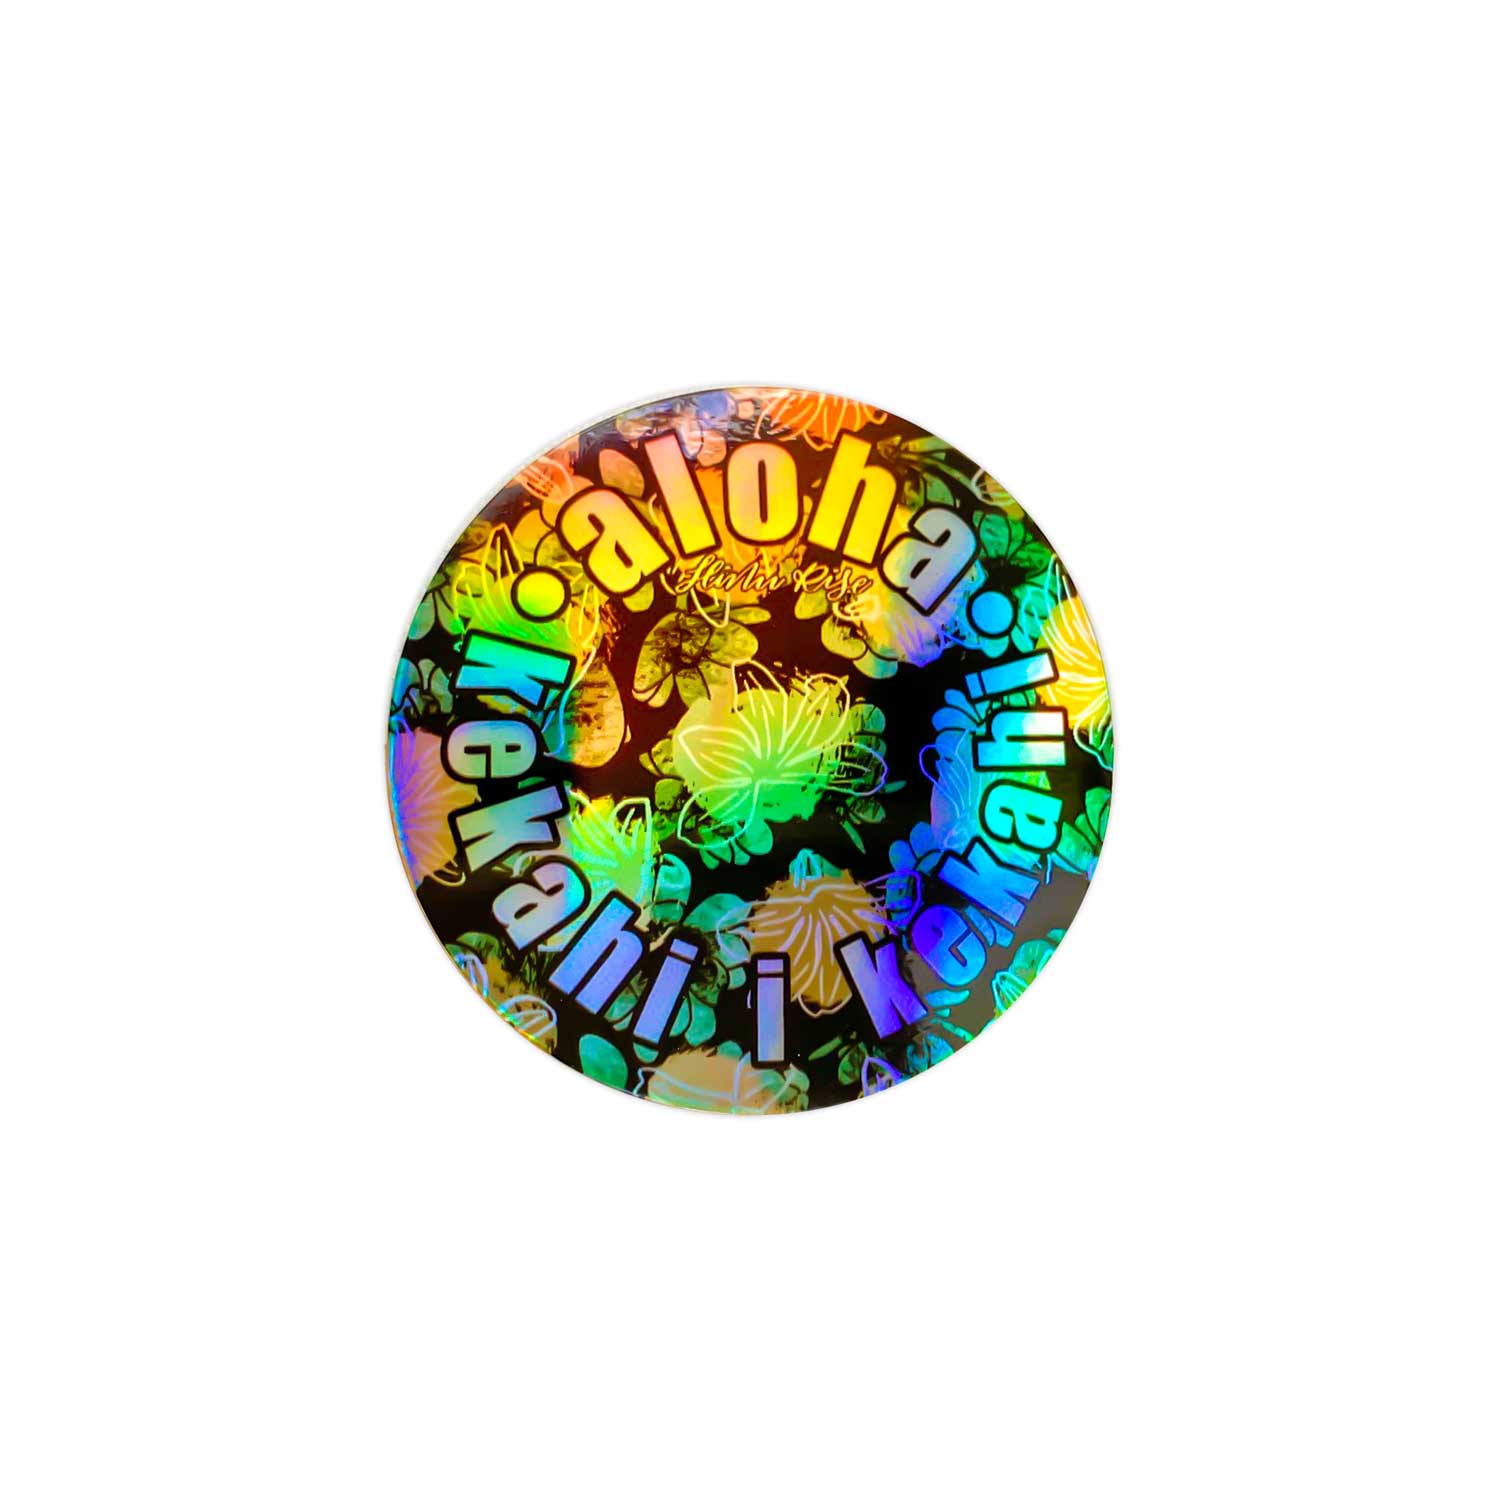 3” Vinyl Pepili "Aloha Kekahi I Kekahi" Love One Another Holographic Sticker